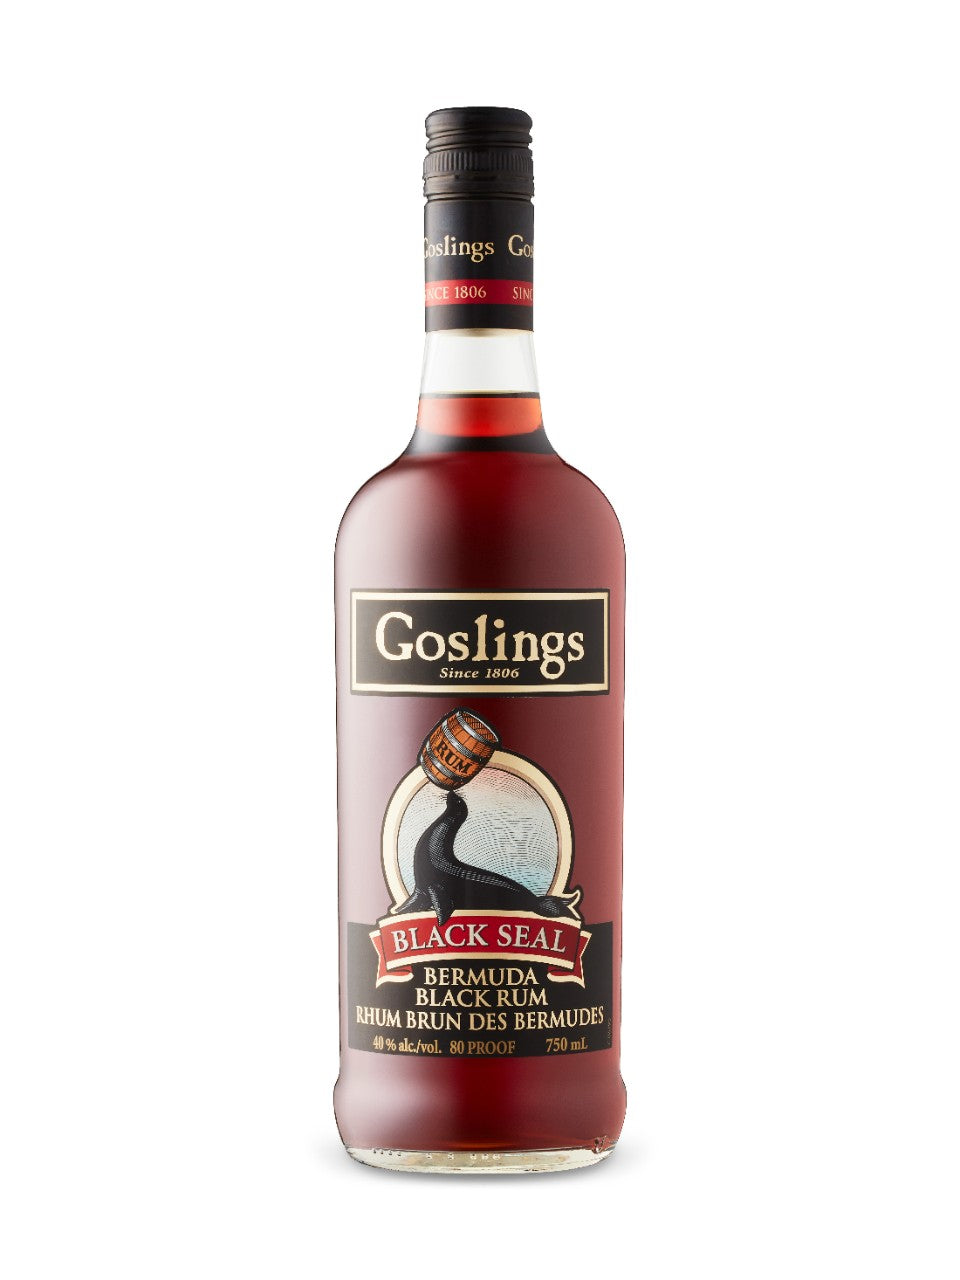 Gosling's Bermuda Black Seal Rum 750 mL bottle